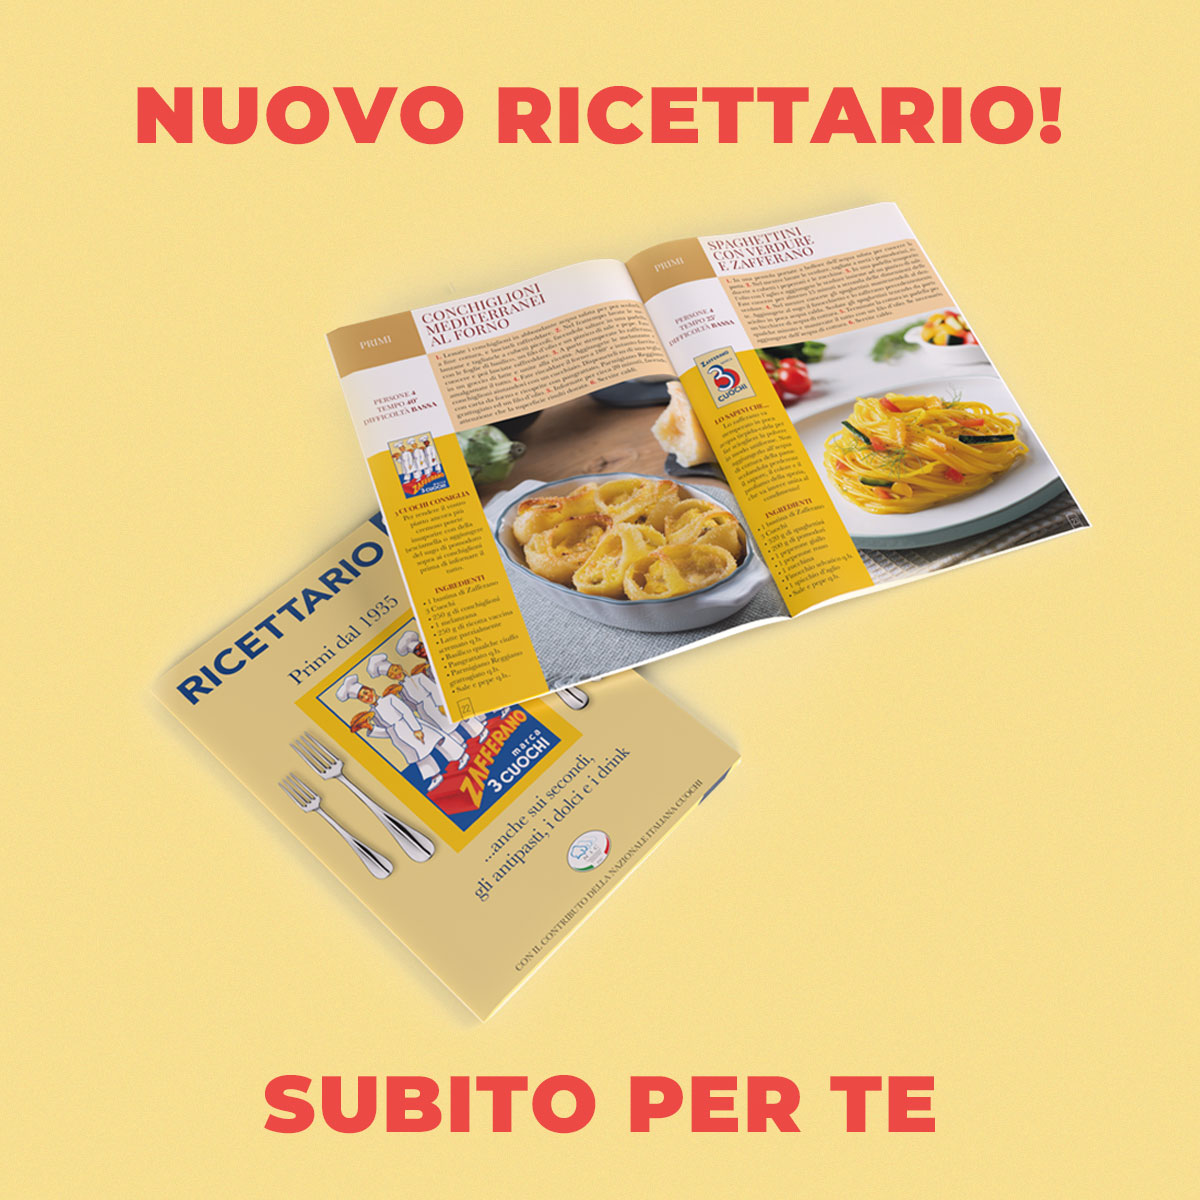 Zafferano 3 Cuochi presenta il nuovo ricettario realizzato in collaborazione con la Nazionale Italiana Cuochi. 